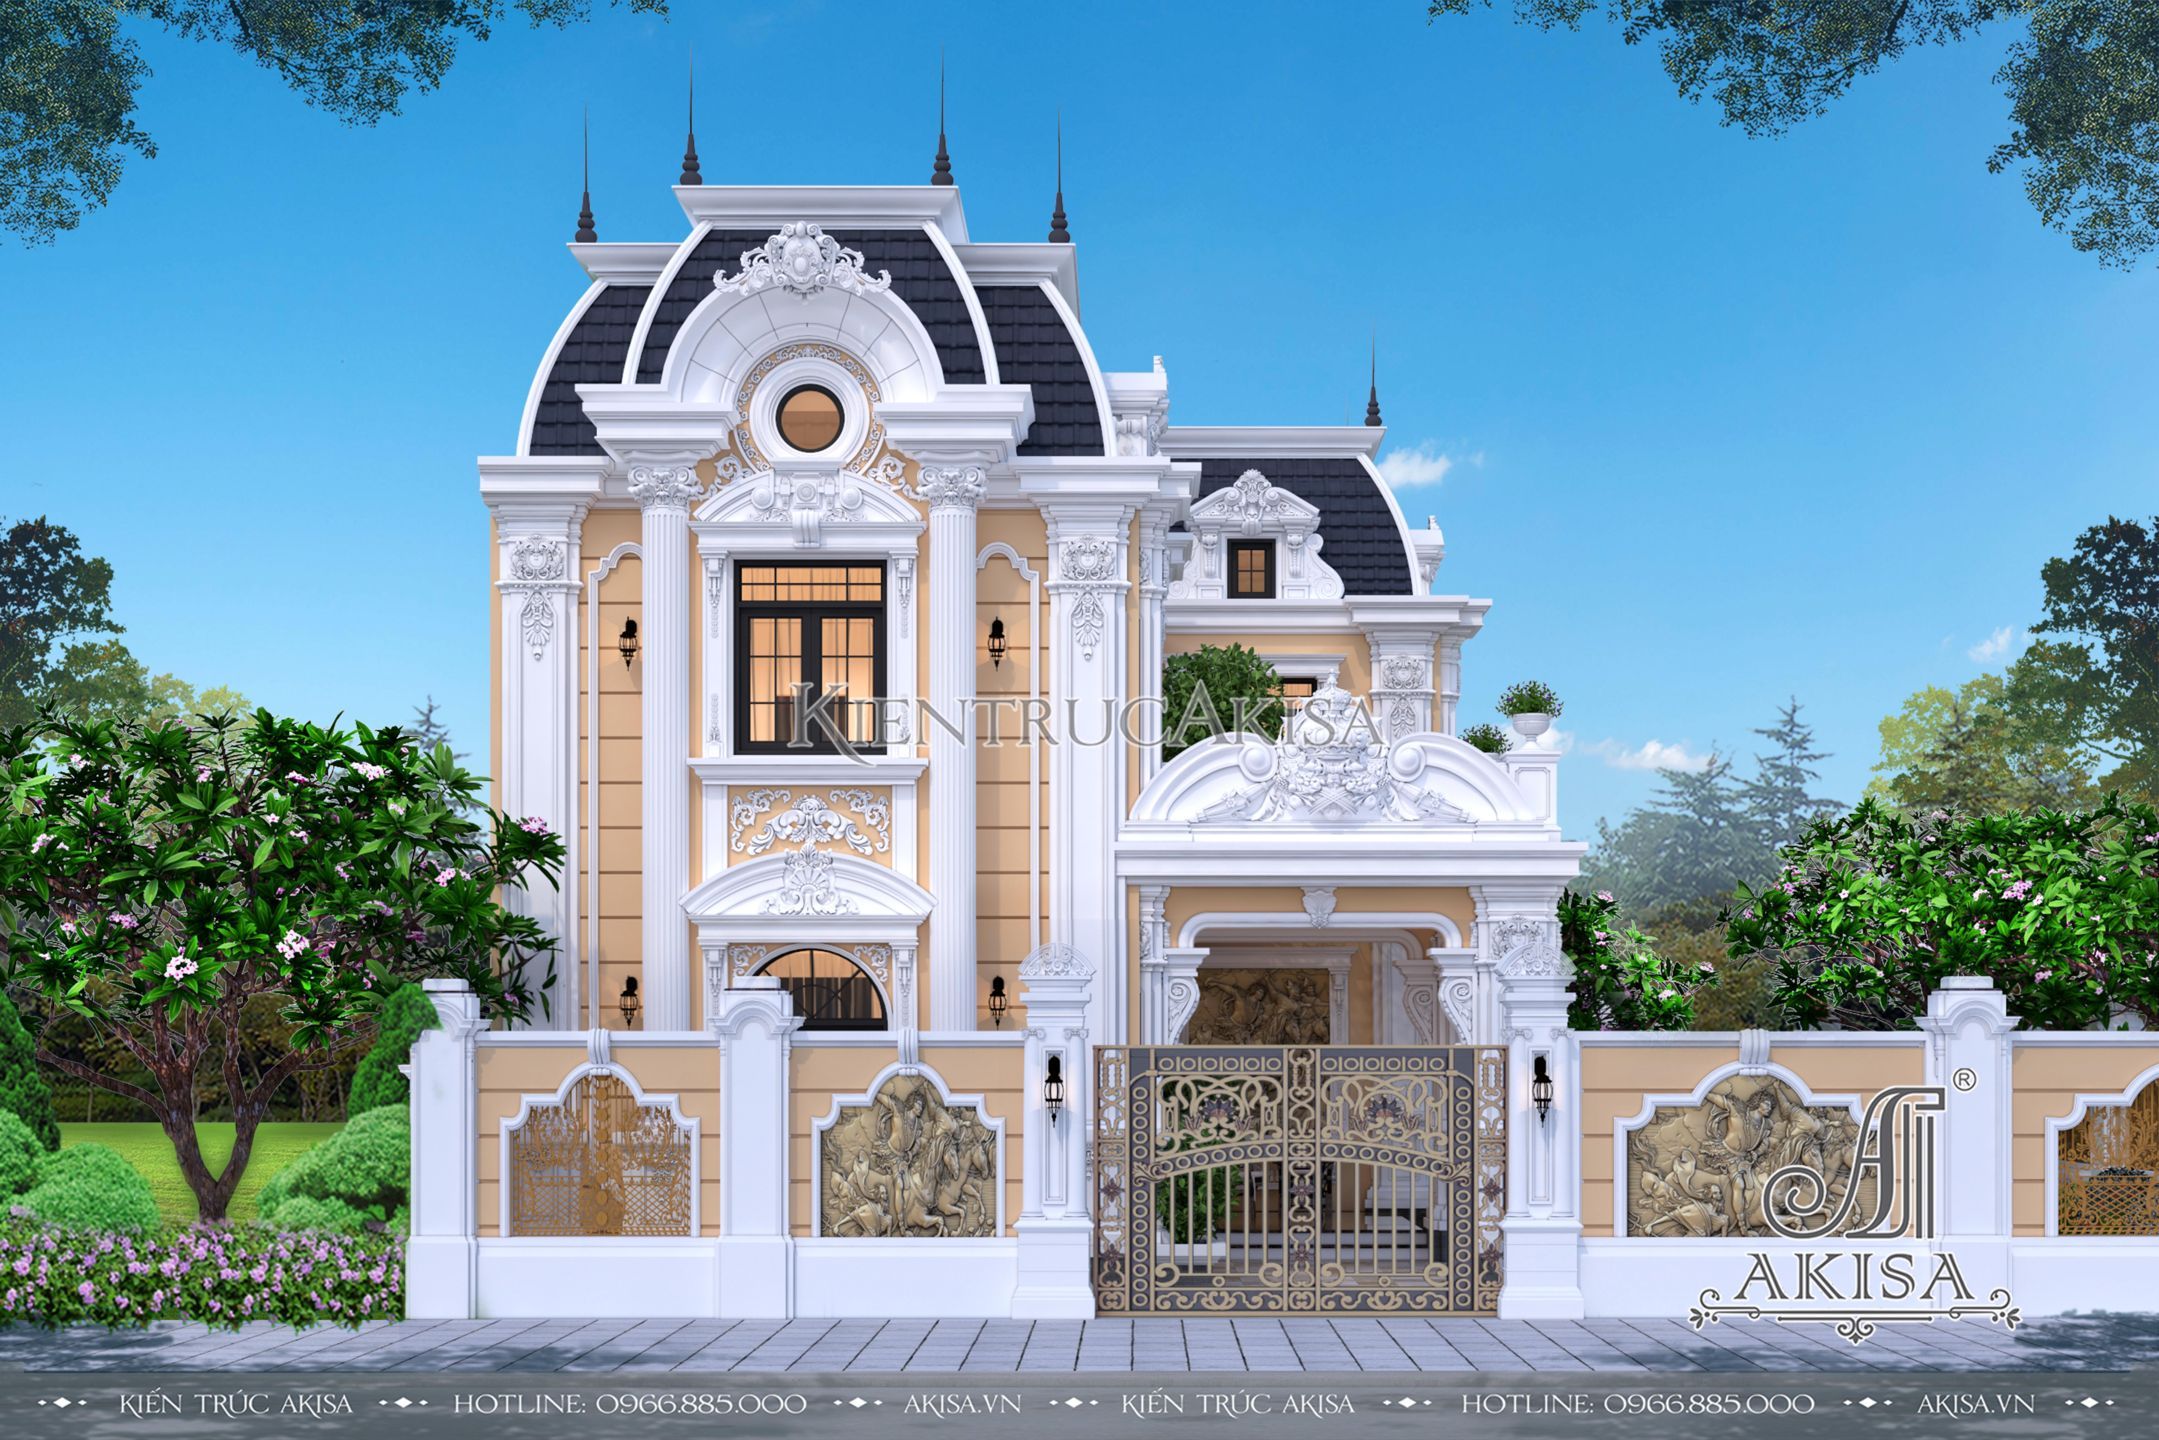 5 Mẫu biệt thự kiểu Pháp sang trọng mỹ lệ  Kiến trúc Á Châu